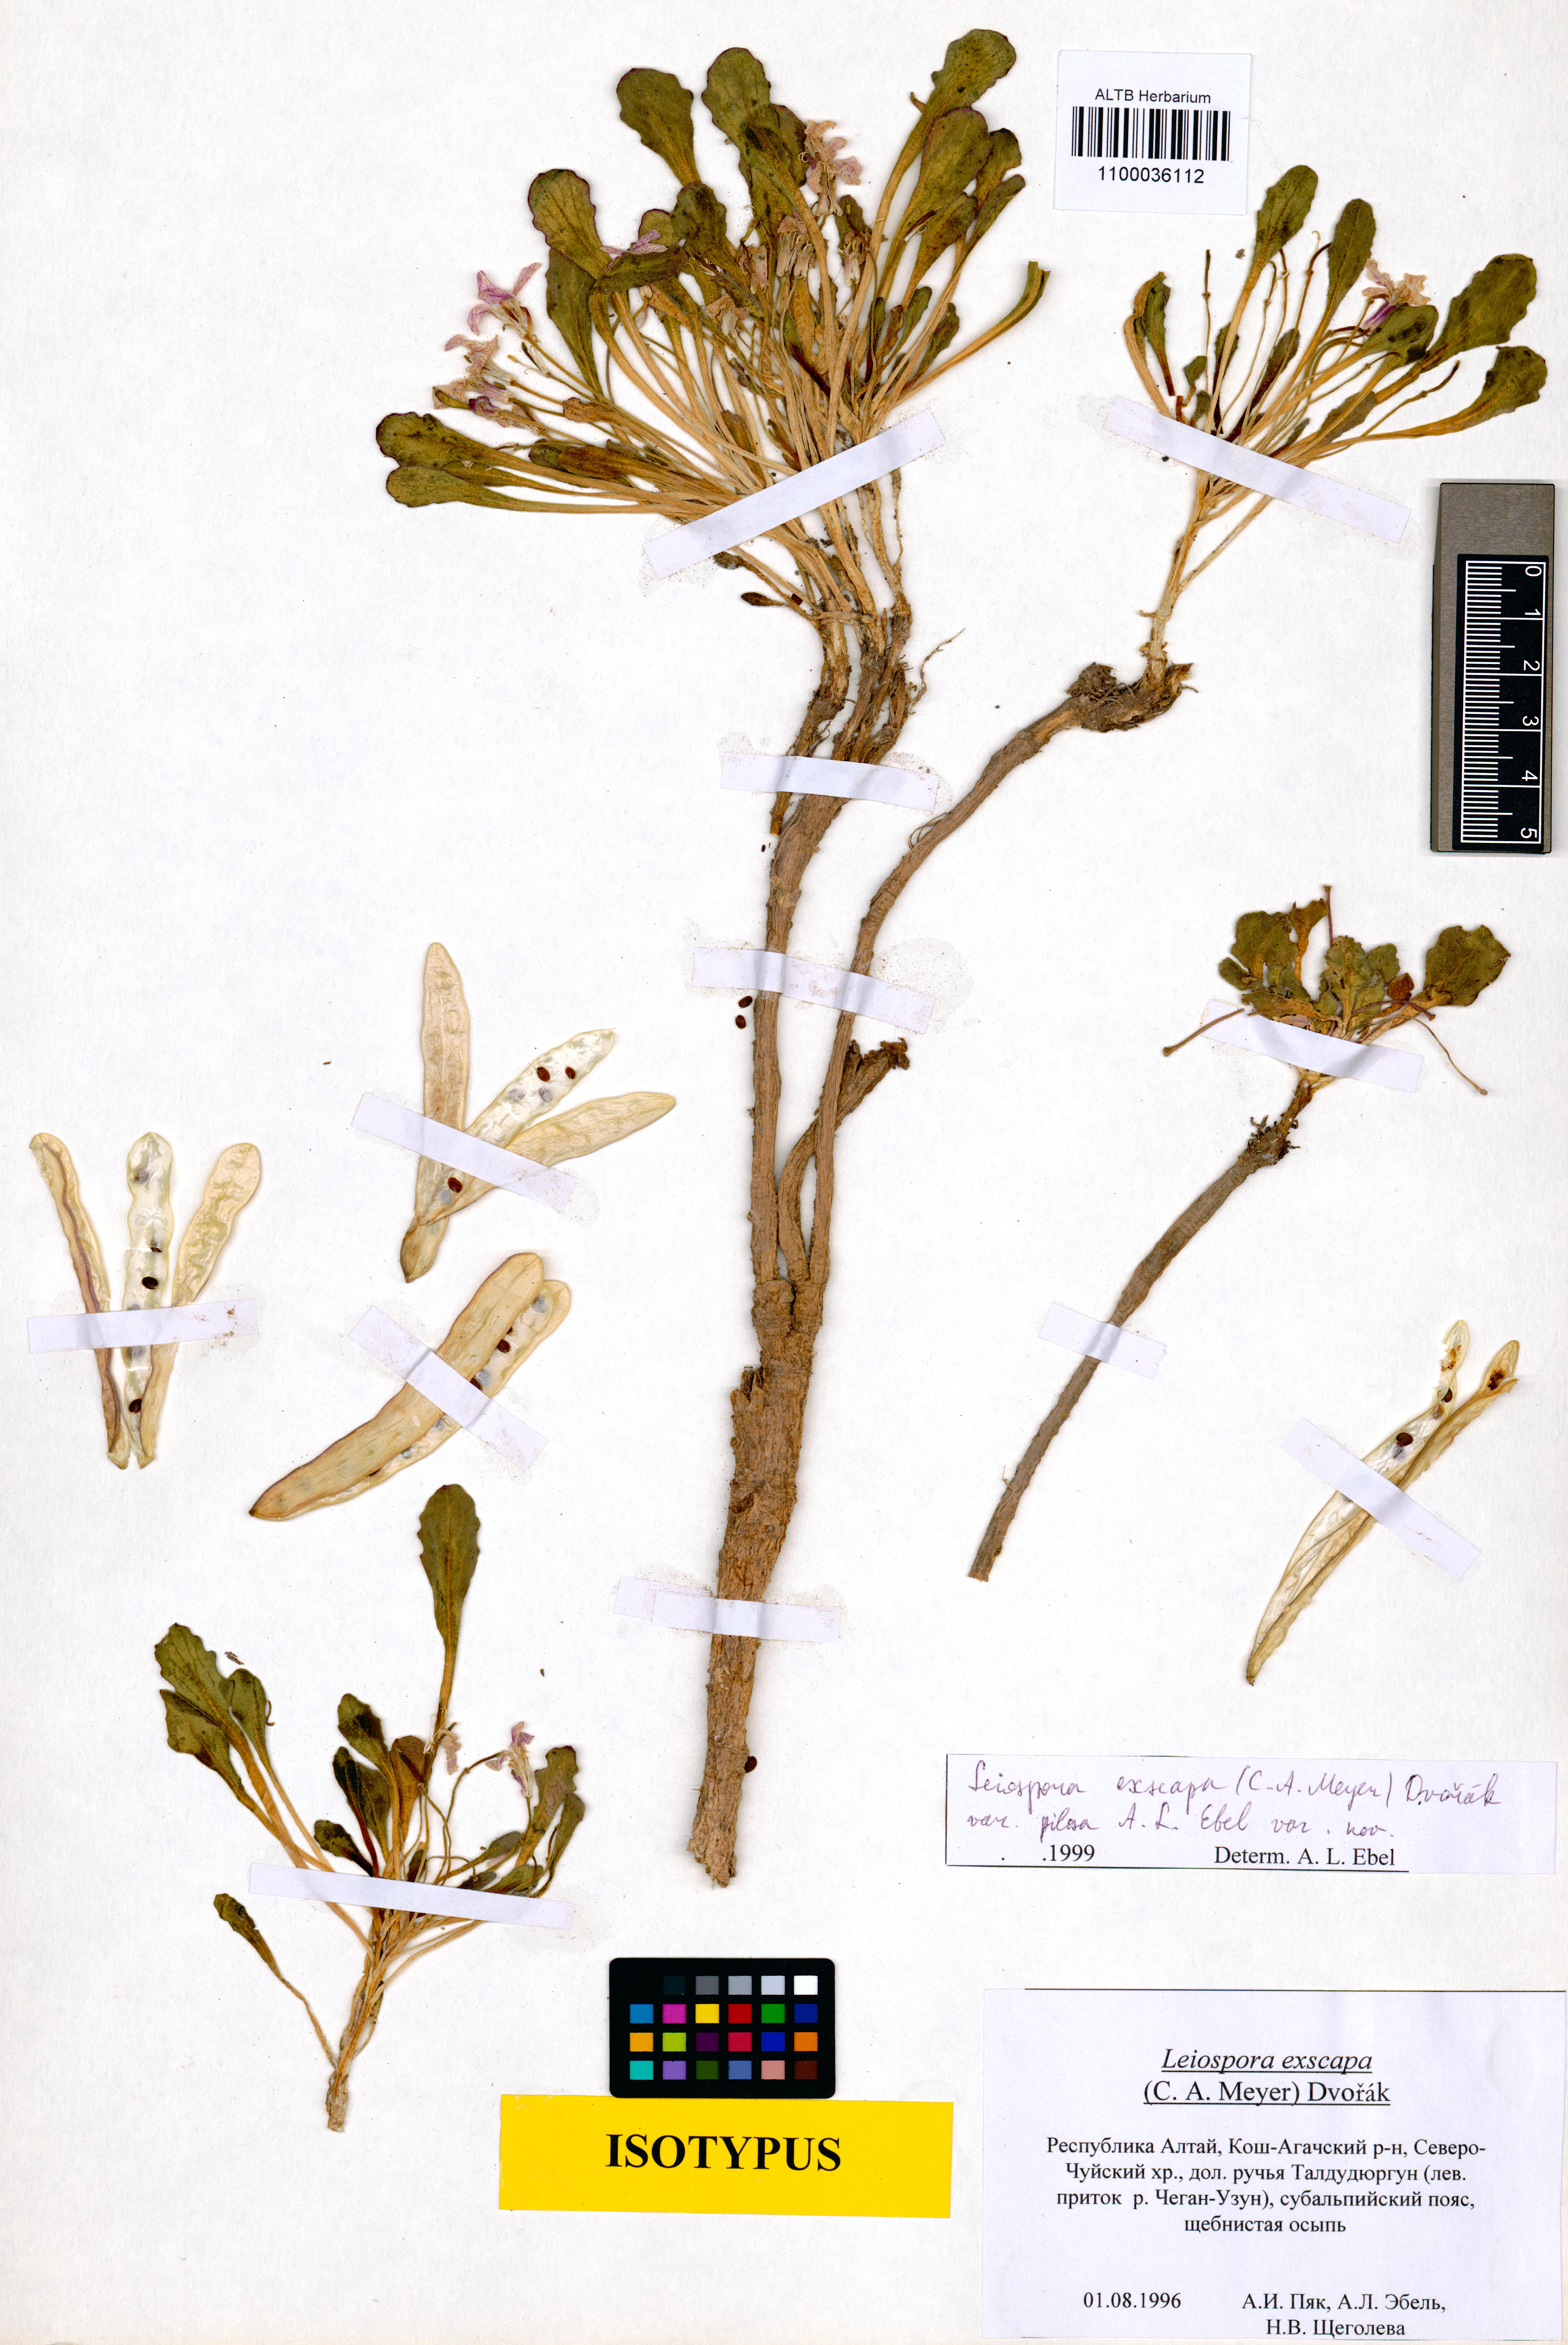 Leiospora exscapa (C.A.Mey.) F.Dvořák var. pilosa A. L. Ebel